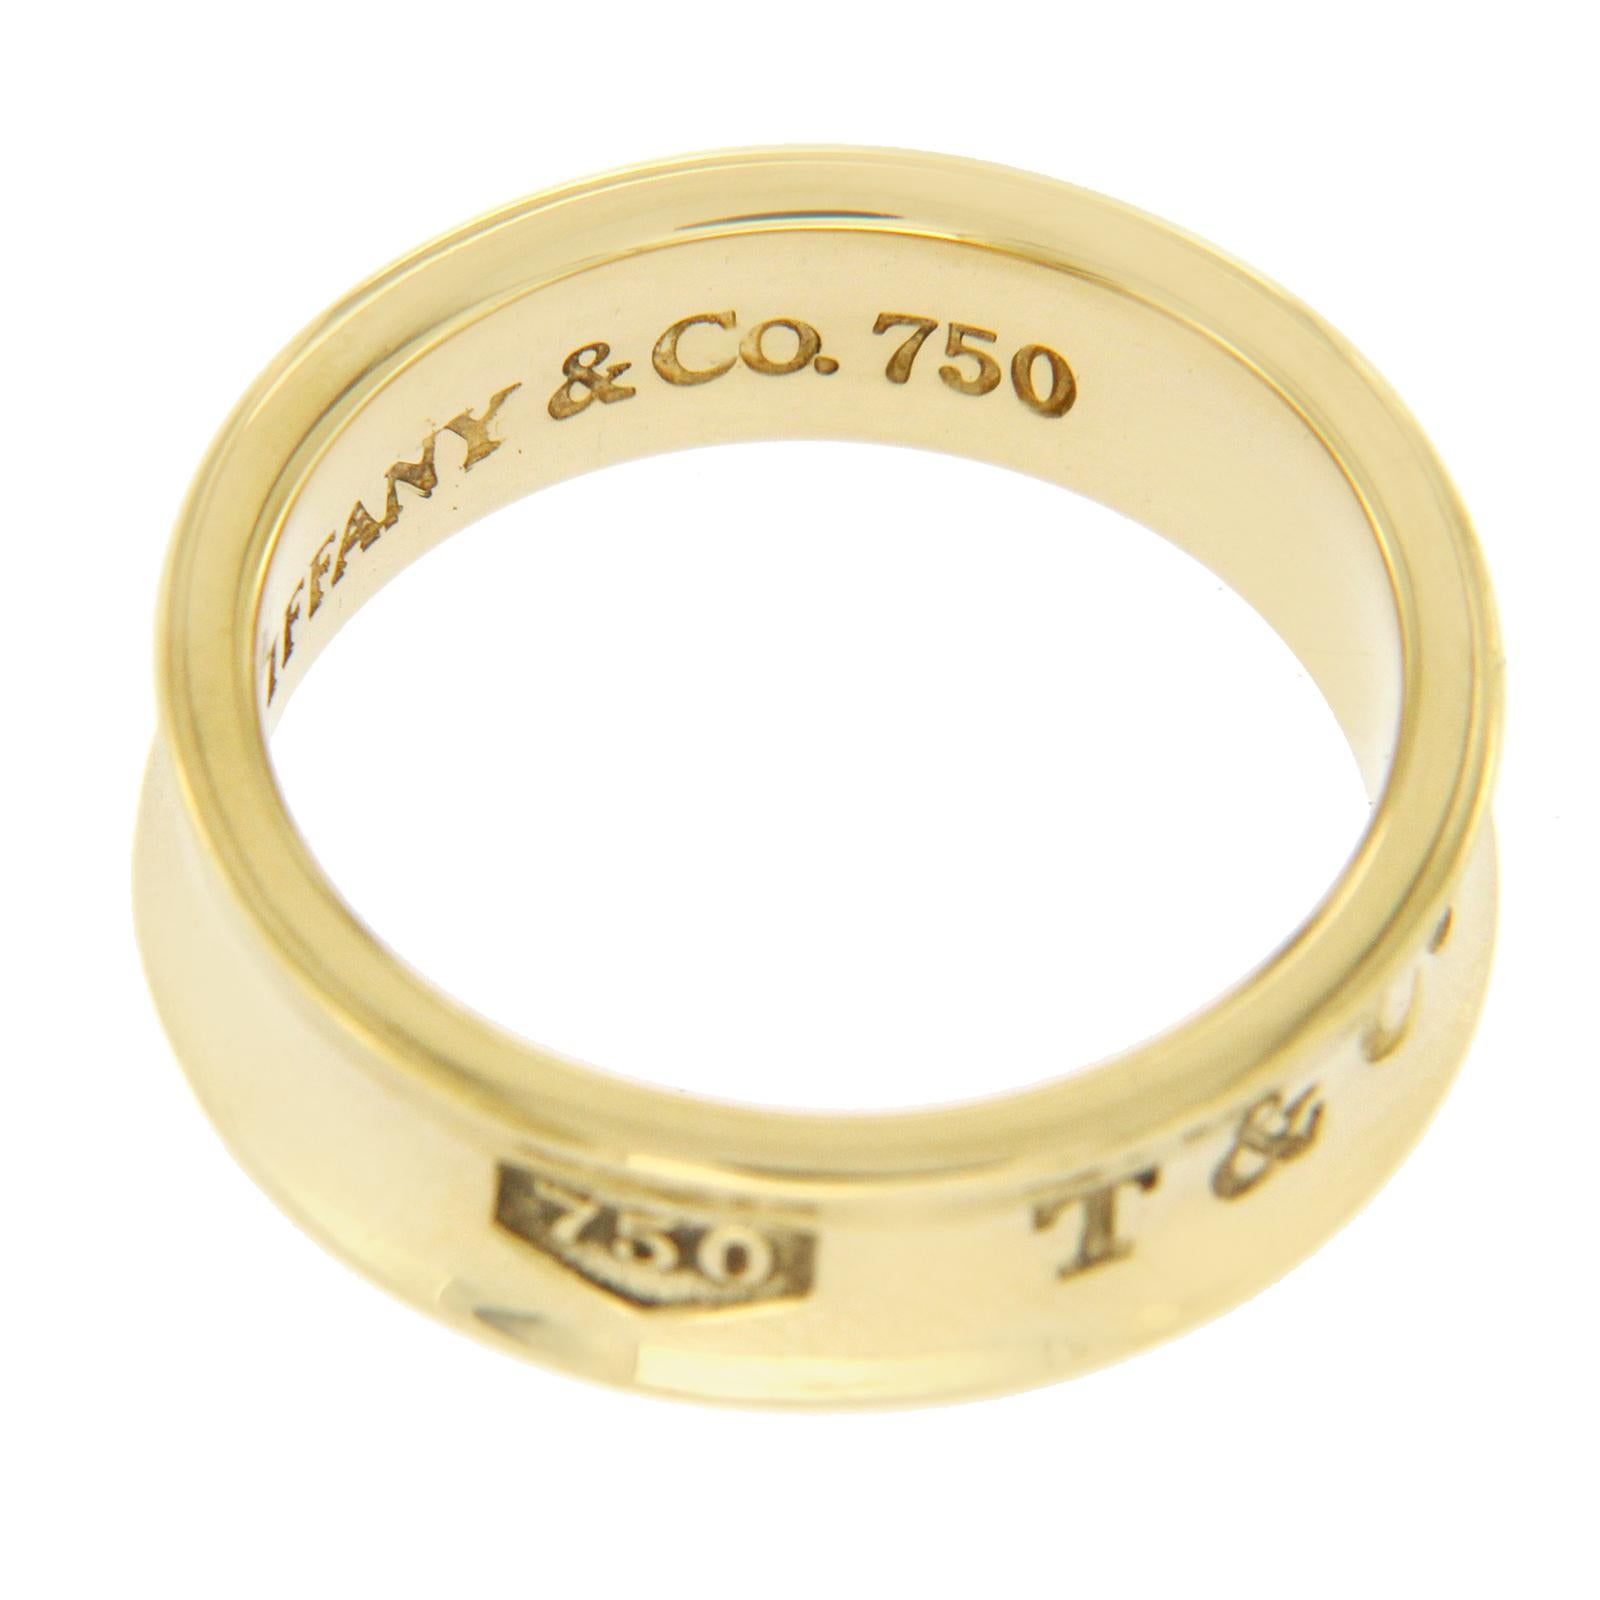 1997 ring